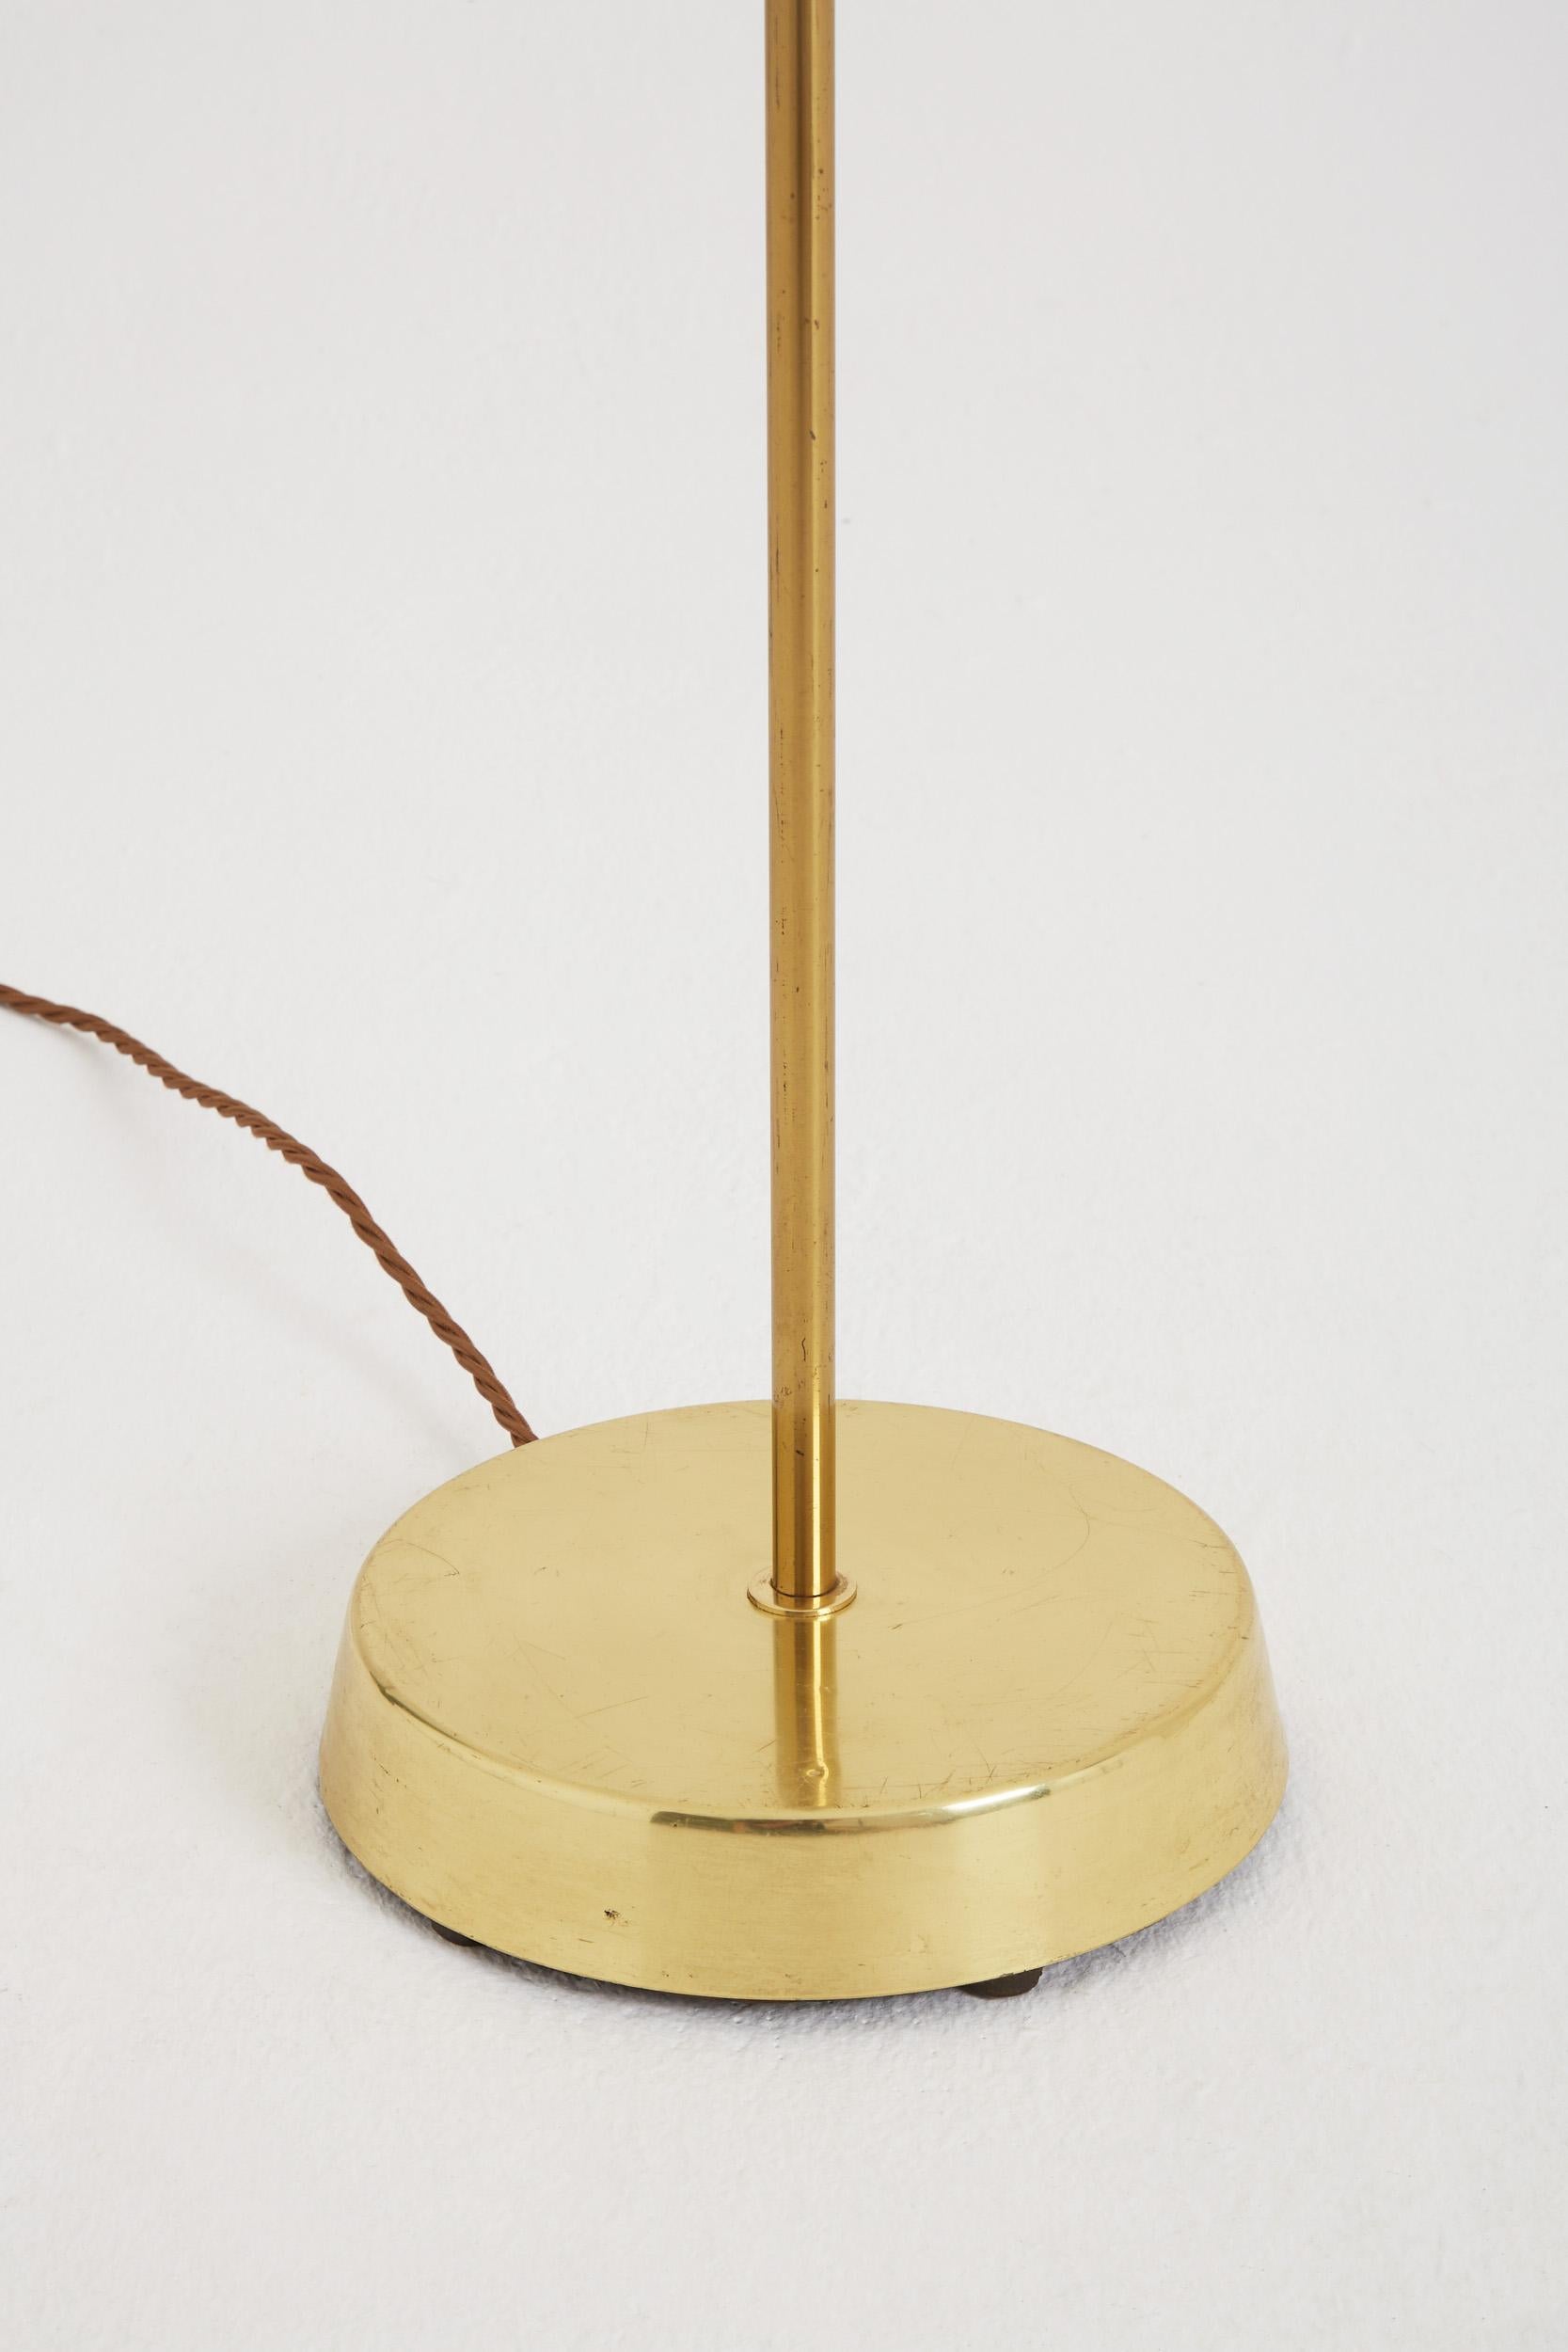 Mid-Century Modern Pair of Mid-Century Brass Floor Lamps